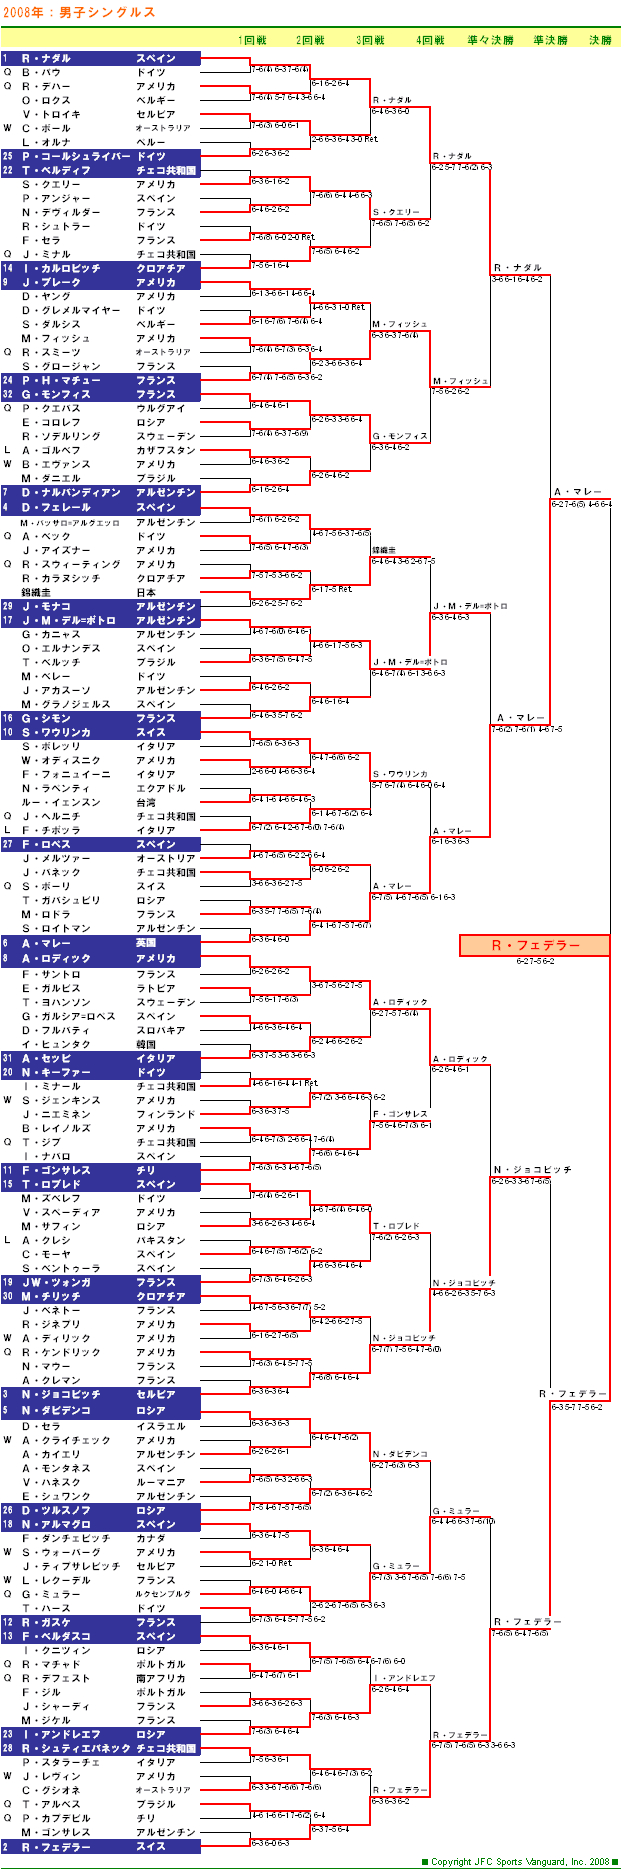 USオープンテニステニス2008　男子シングルスドロー表